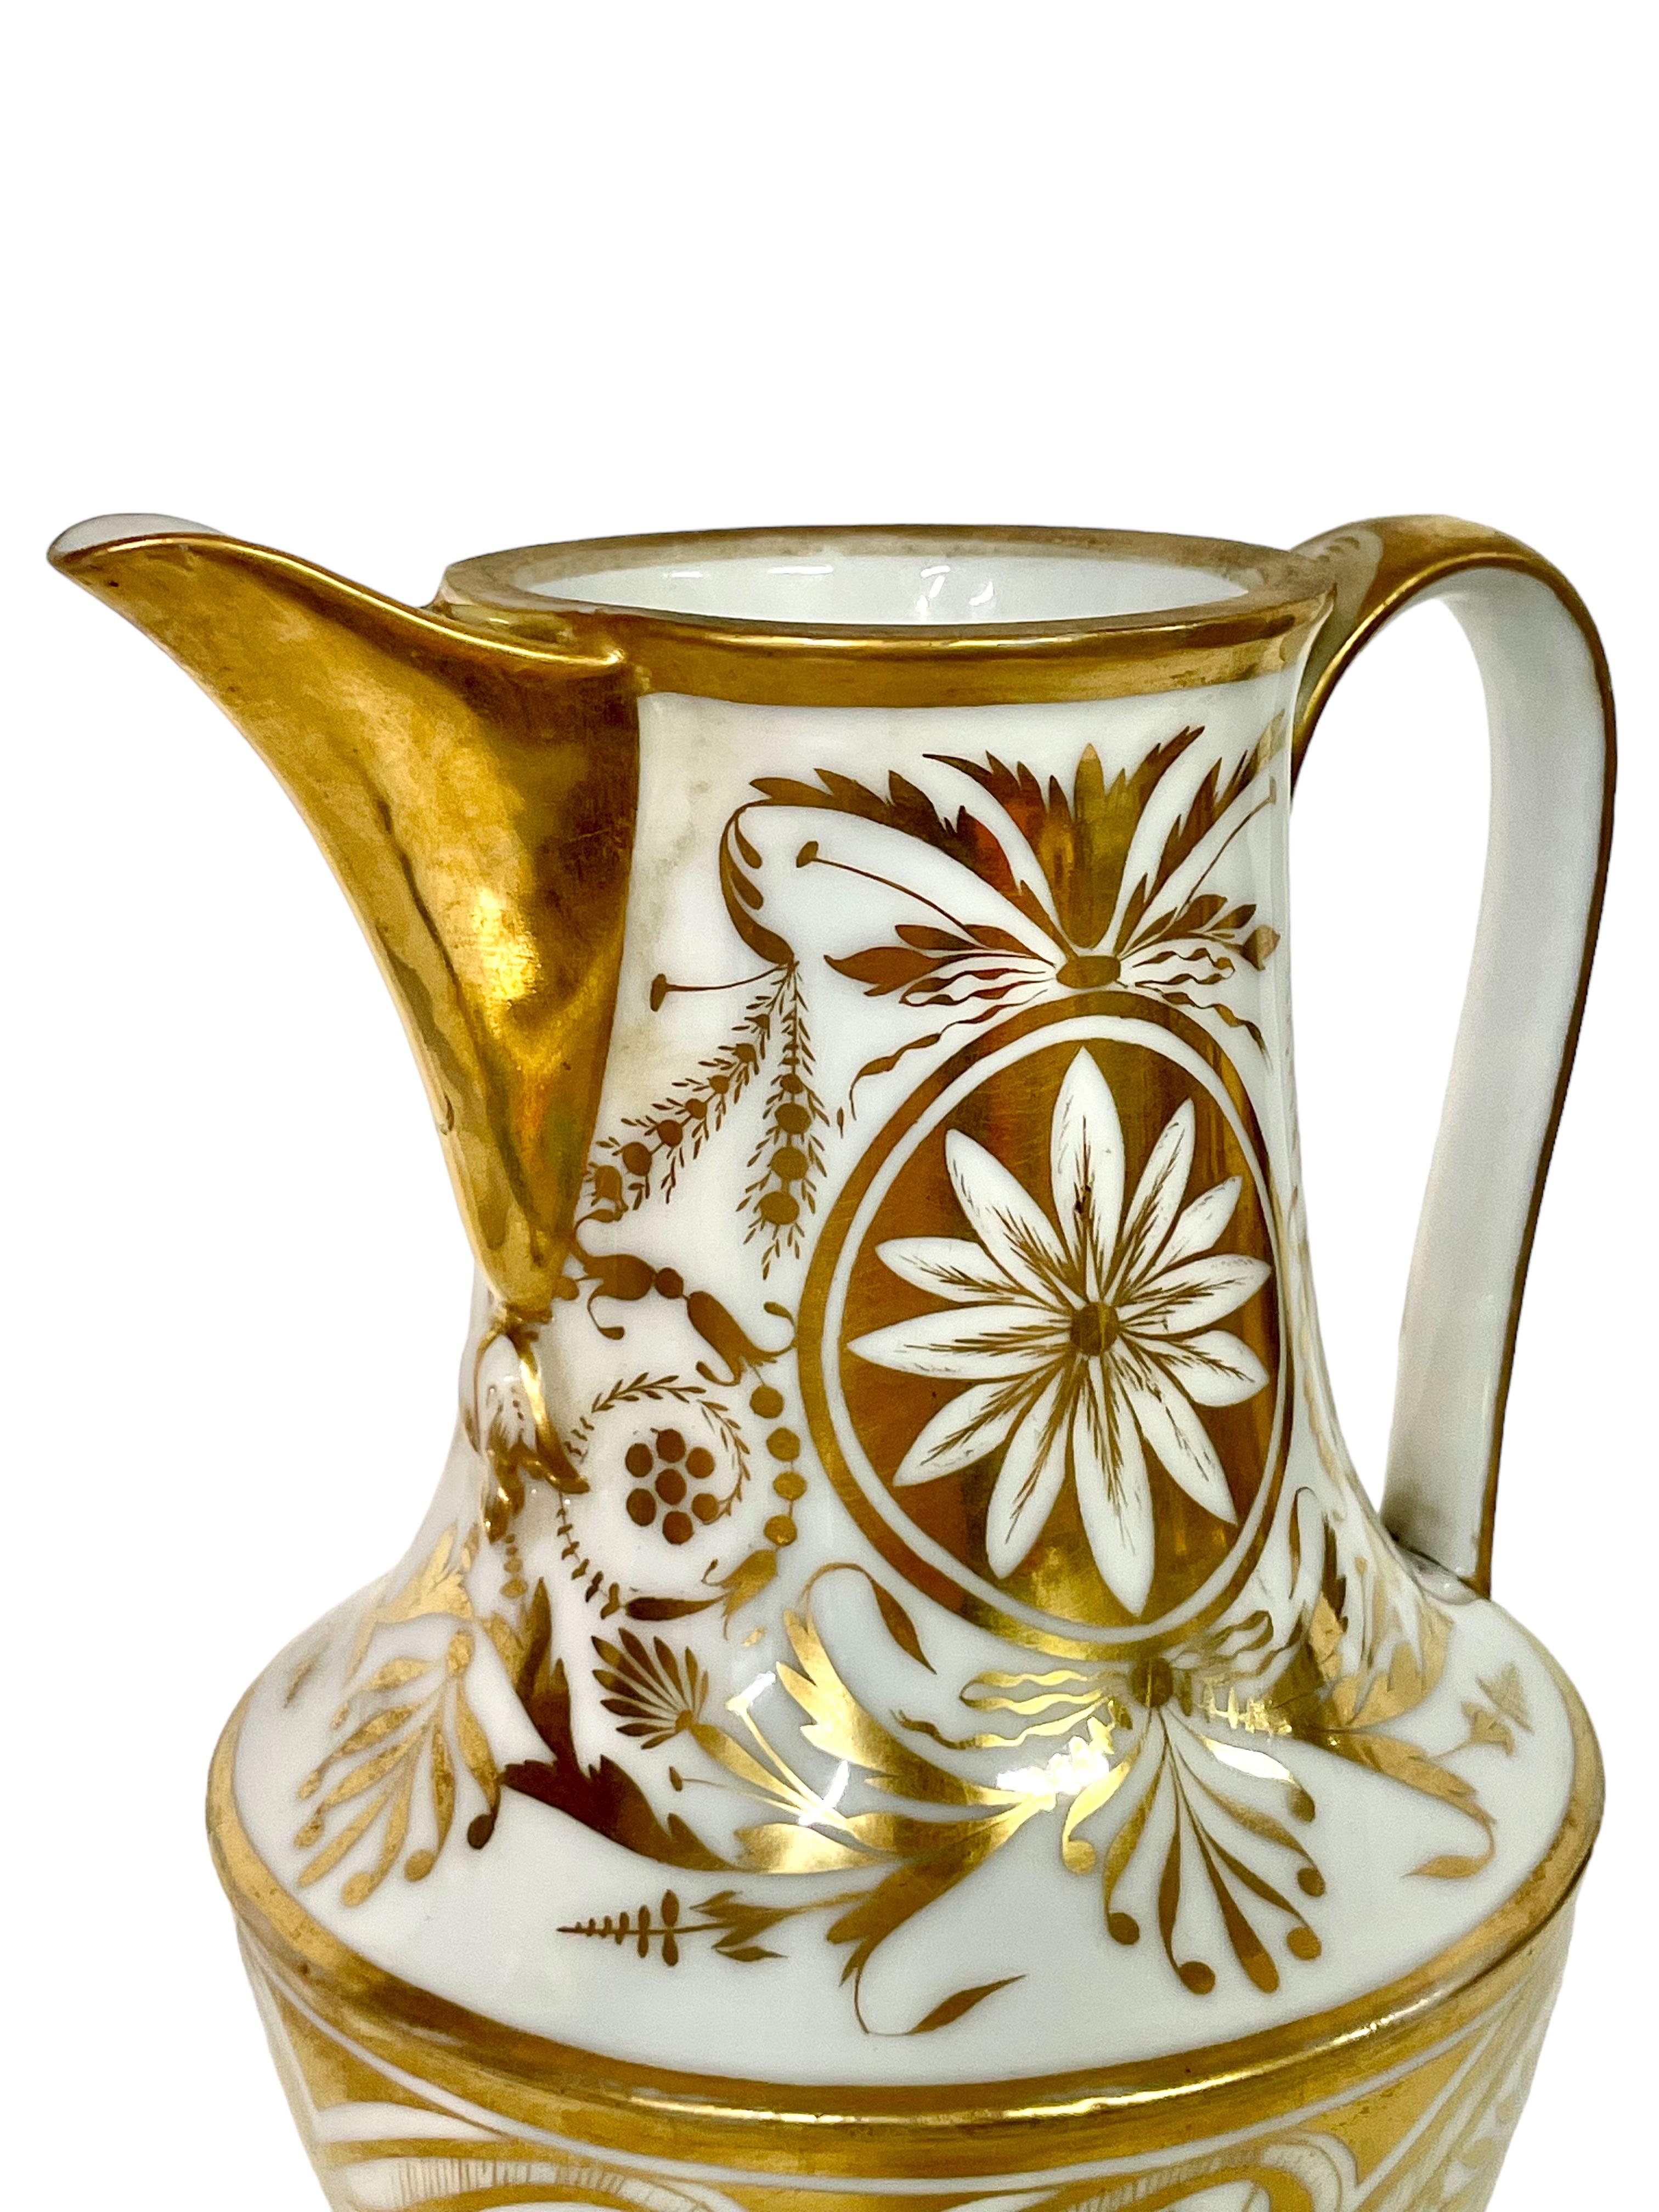 Ein hervorragender Wasserkrug aus dem frühen 19. Jahrhundert aus Pariser Porzellan mit feiner Vergoldung in einem auffälligen, handgemalten Design aus Blumen, Blättern und anderen dekorativen Motiven, die typisch für diese Zeit sind. Der obere Rand,